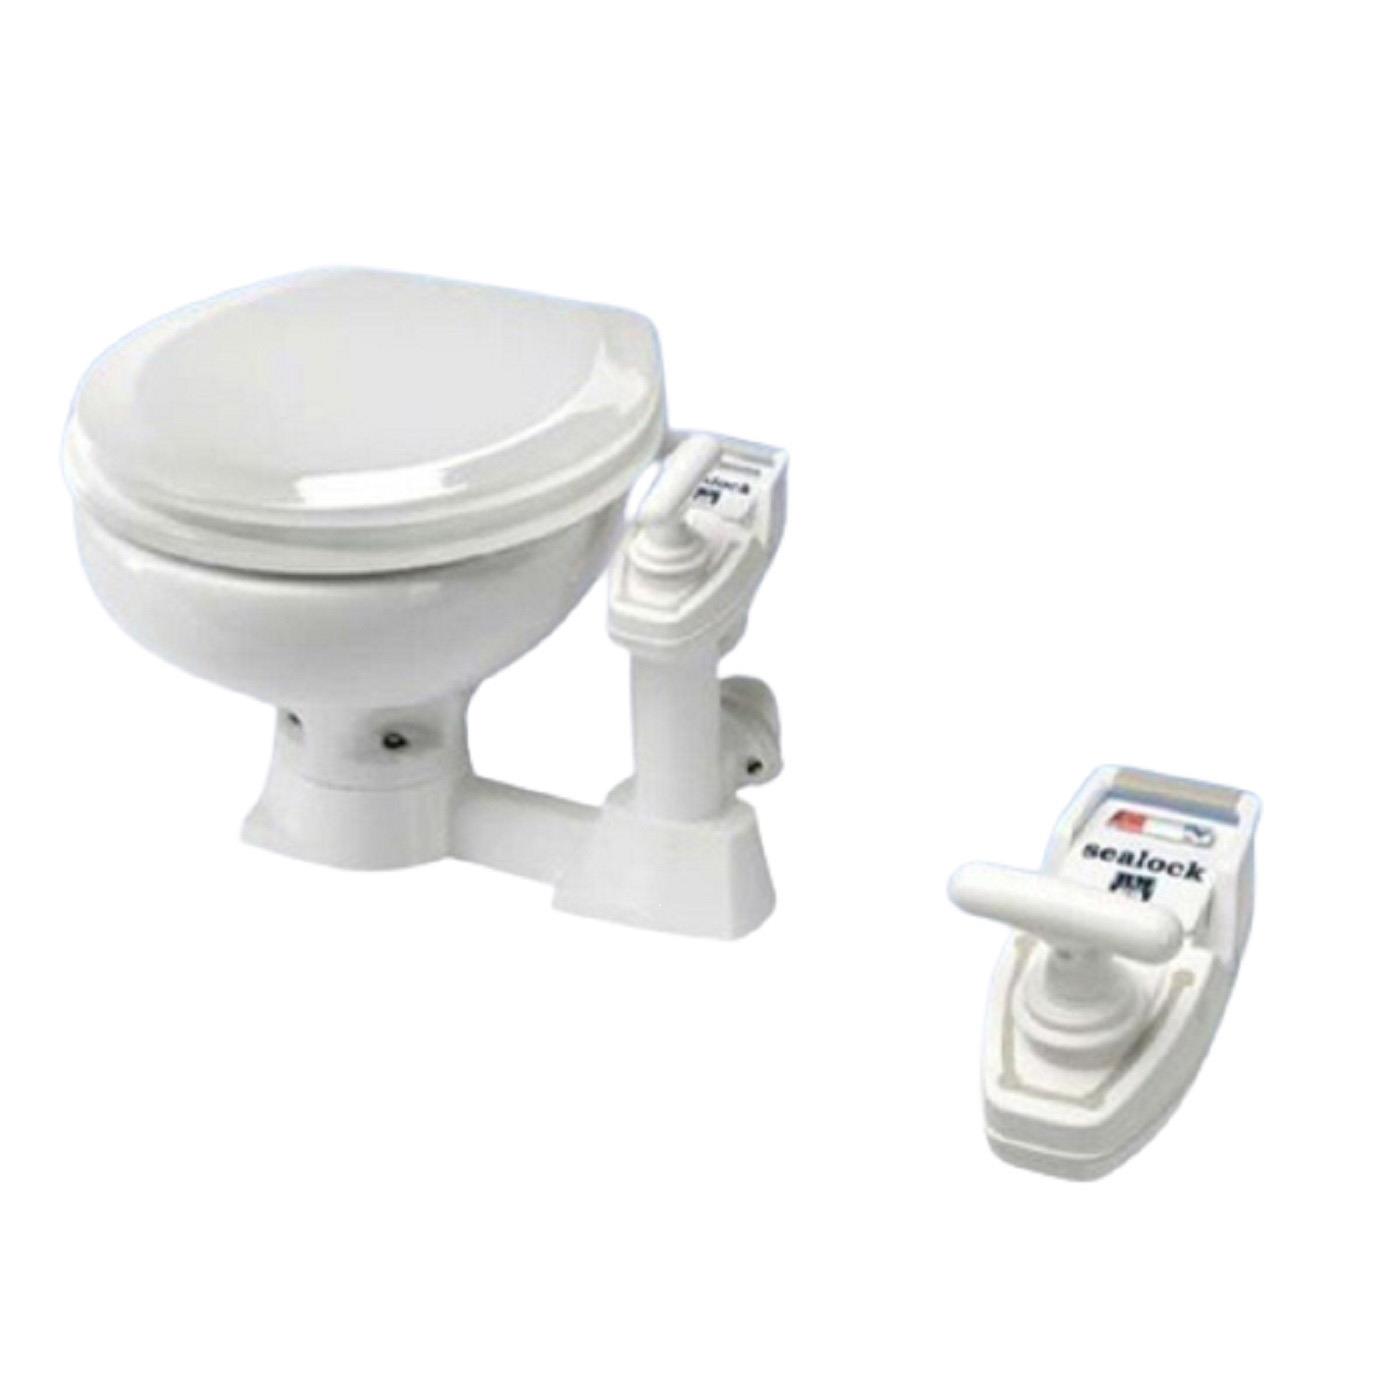 RM69 RM011 Sealock Toilette, Kleines Becken, Sitzgarnitur Kunststoff